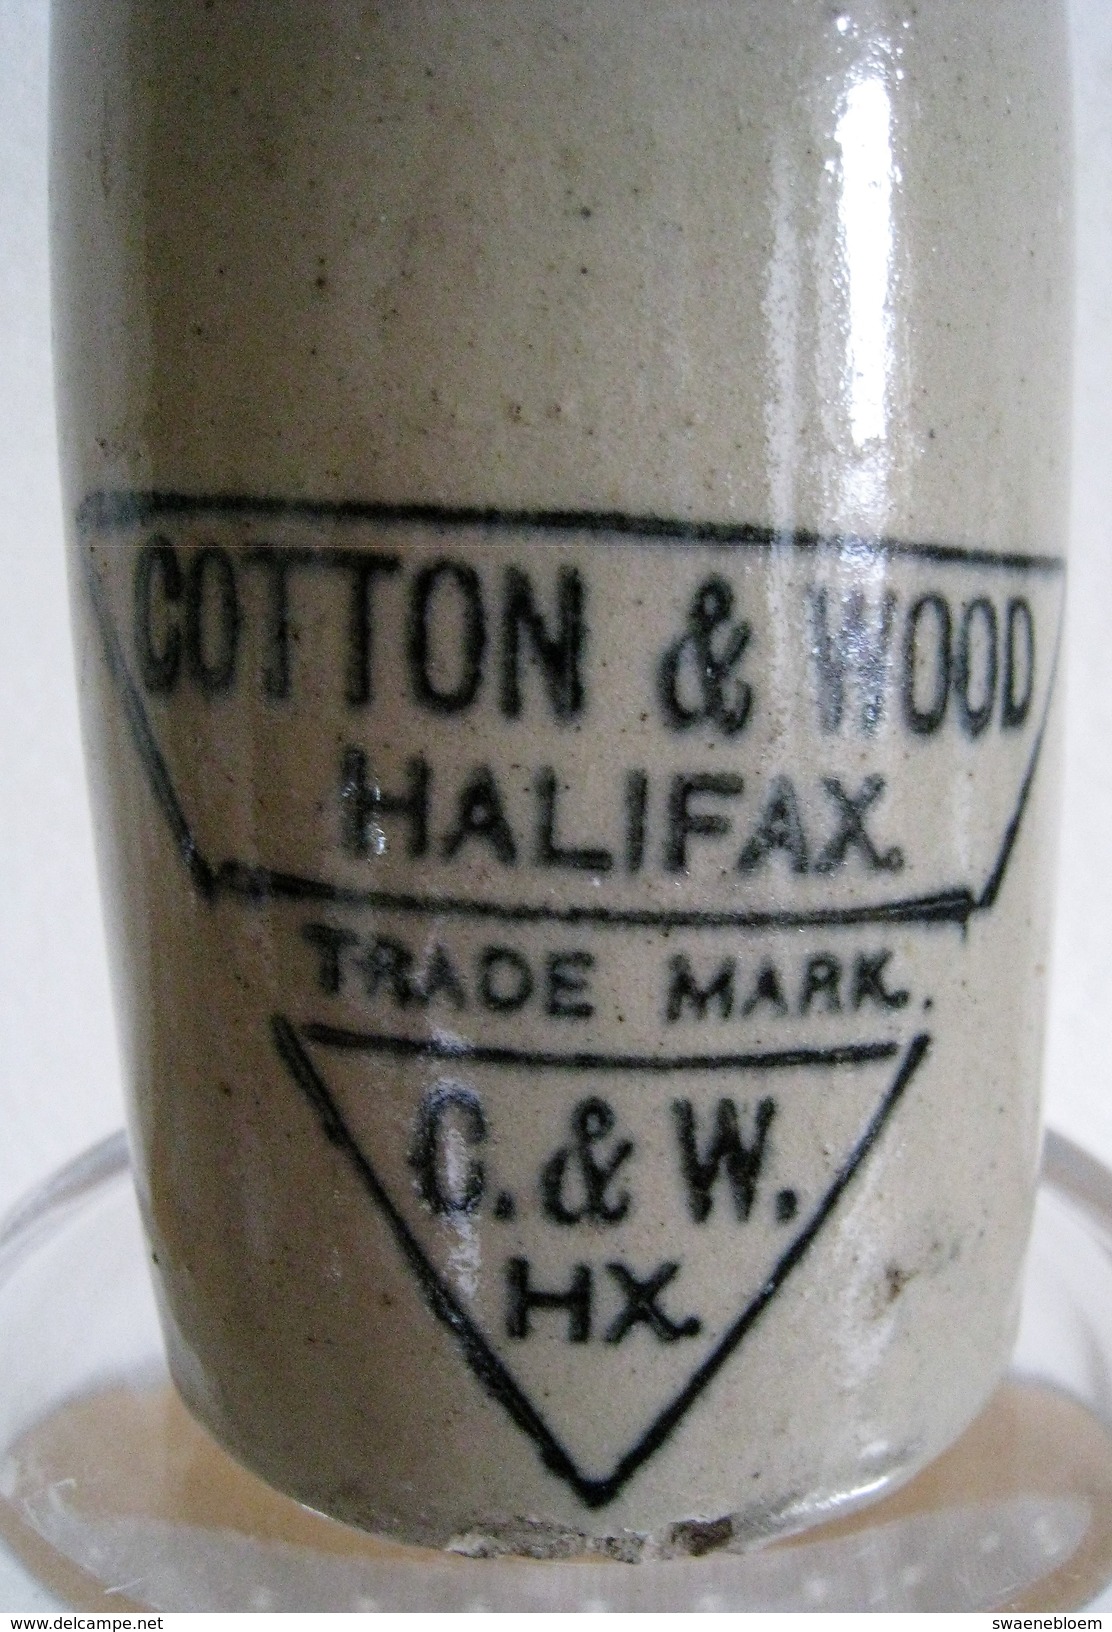 GB.- COTTON & WOOD. HALIFAX. TRADE MARK. C. & W. HX. 4 Scans. - Non Classificati